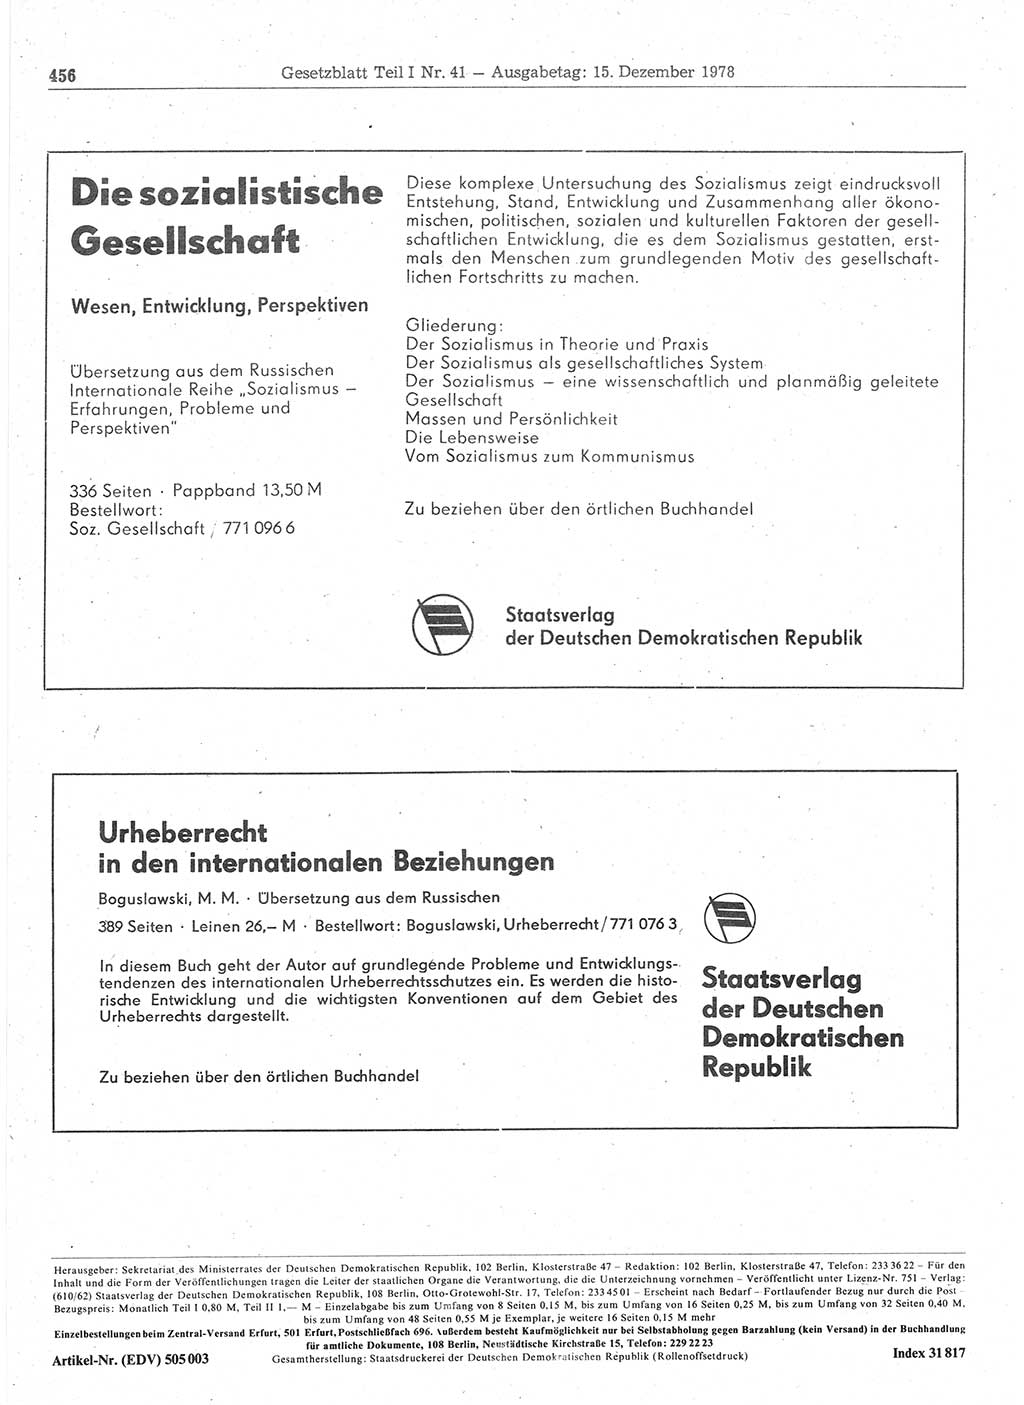 Gesetzblatt (GBl.) der Deutschen Demokratischen Republik (DDR) Teil Ⅰ 1978, Seite 456 (GBl. DDR Ⅰ 1978, S. 456)